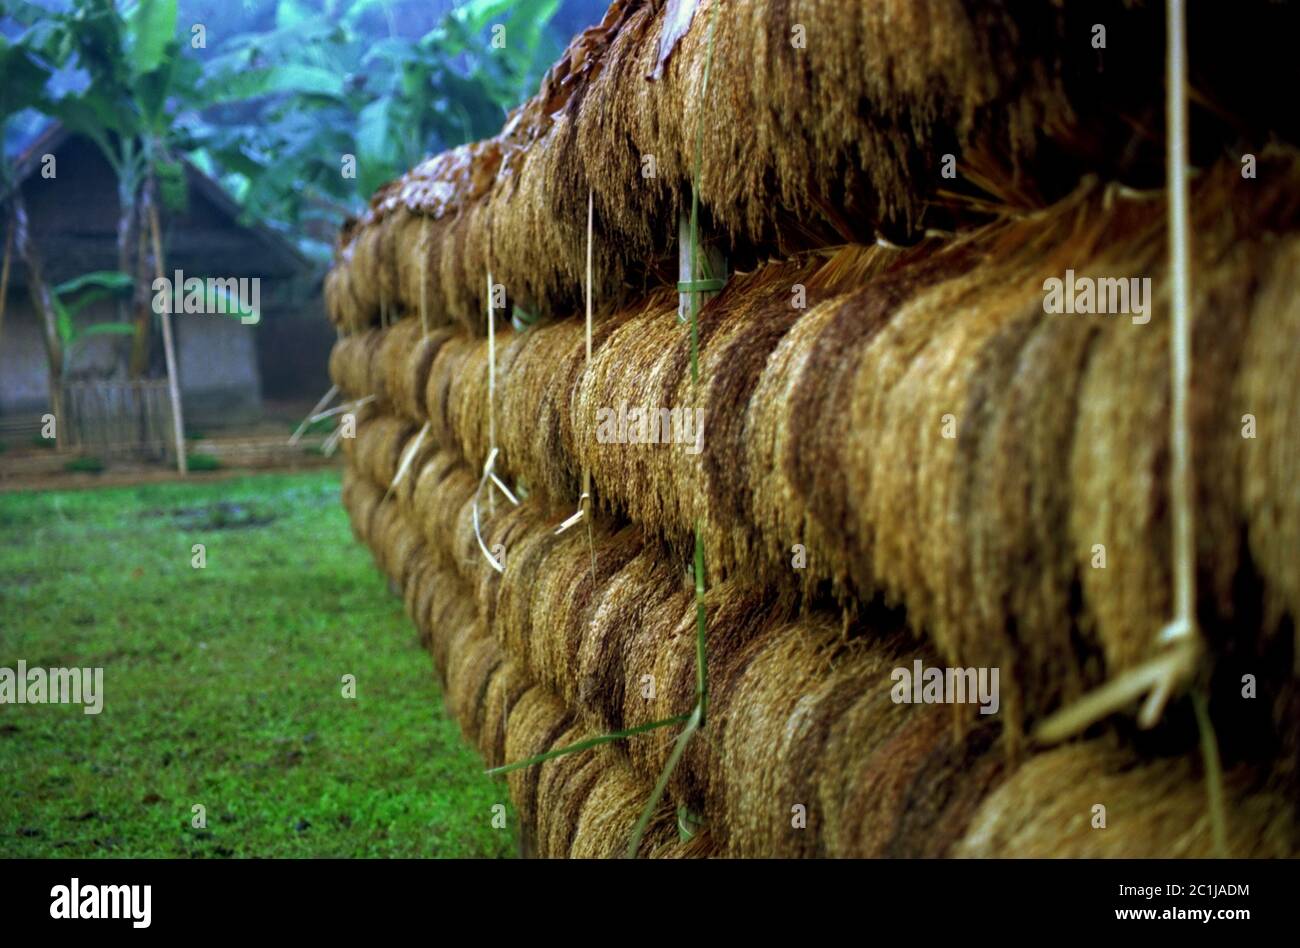 Des bunks de riz récolté sont exposés lors du festival annuel de reconnaissance des récoltes dans le village traditionnel de Ciptagelar, à Java-Ouest, en Indonésie. Banque D'Images